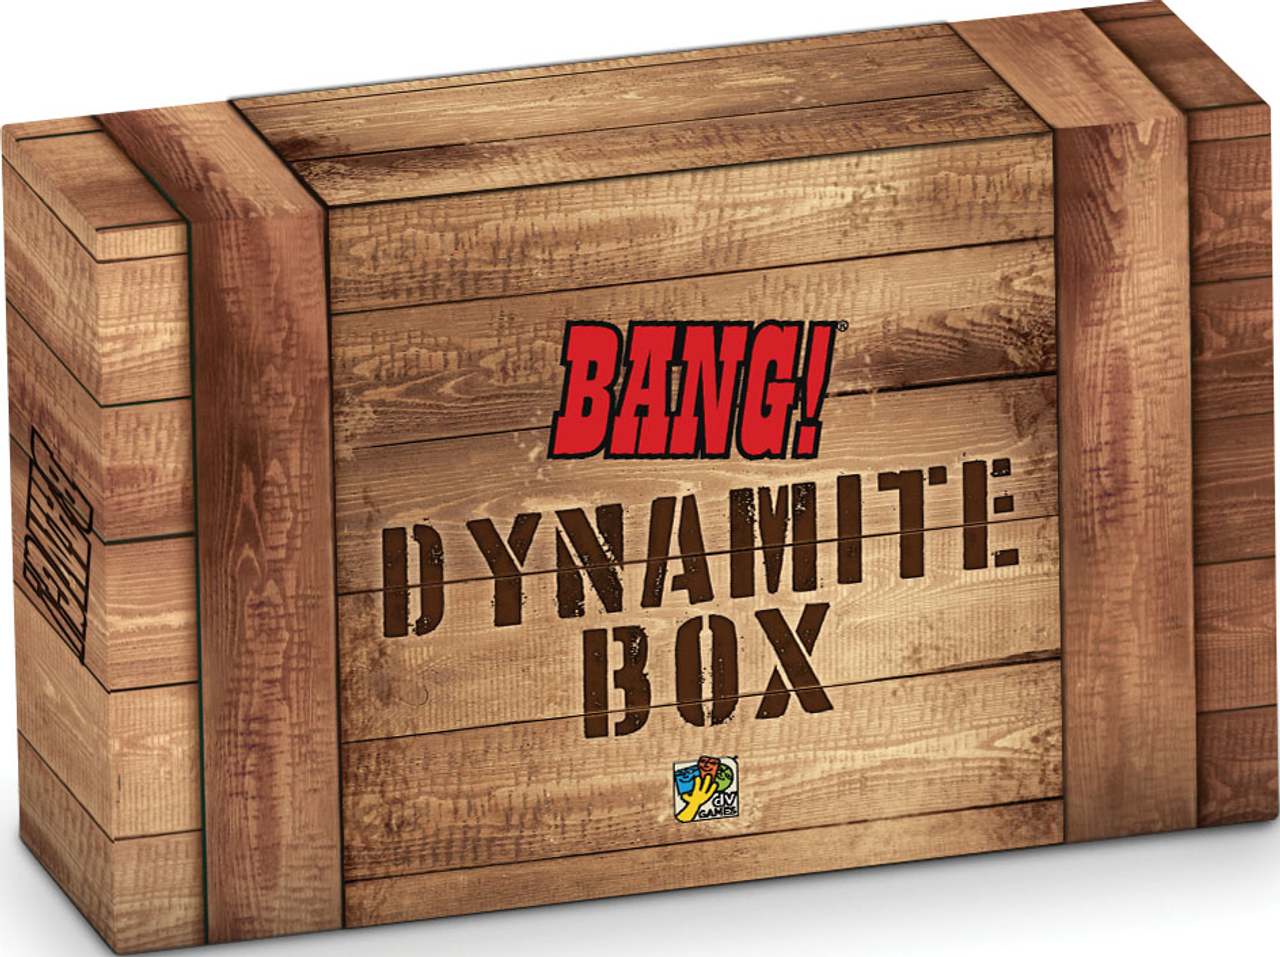 Bang Box